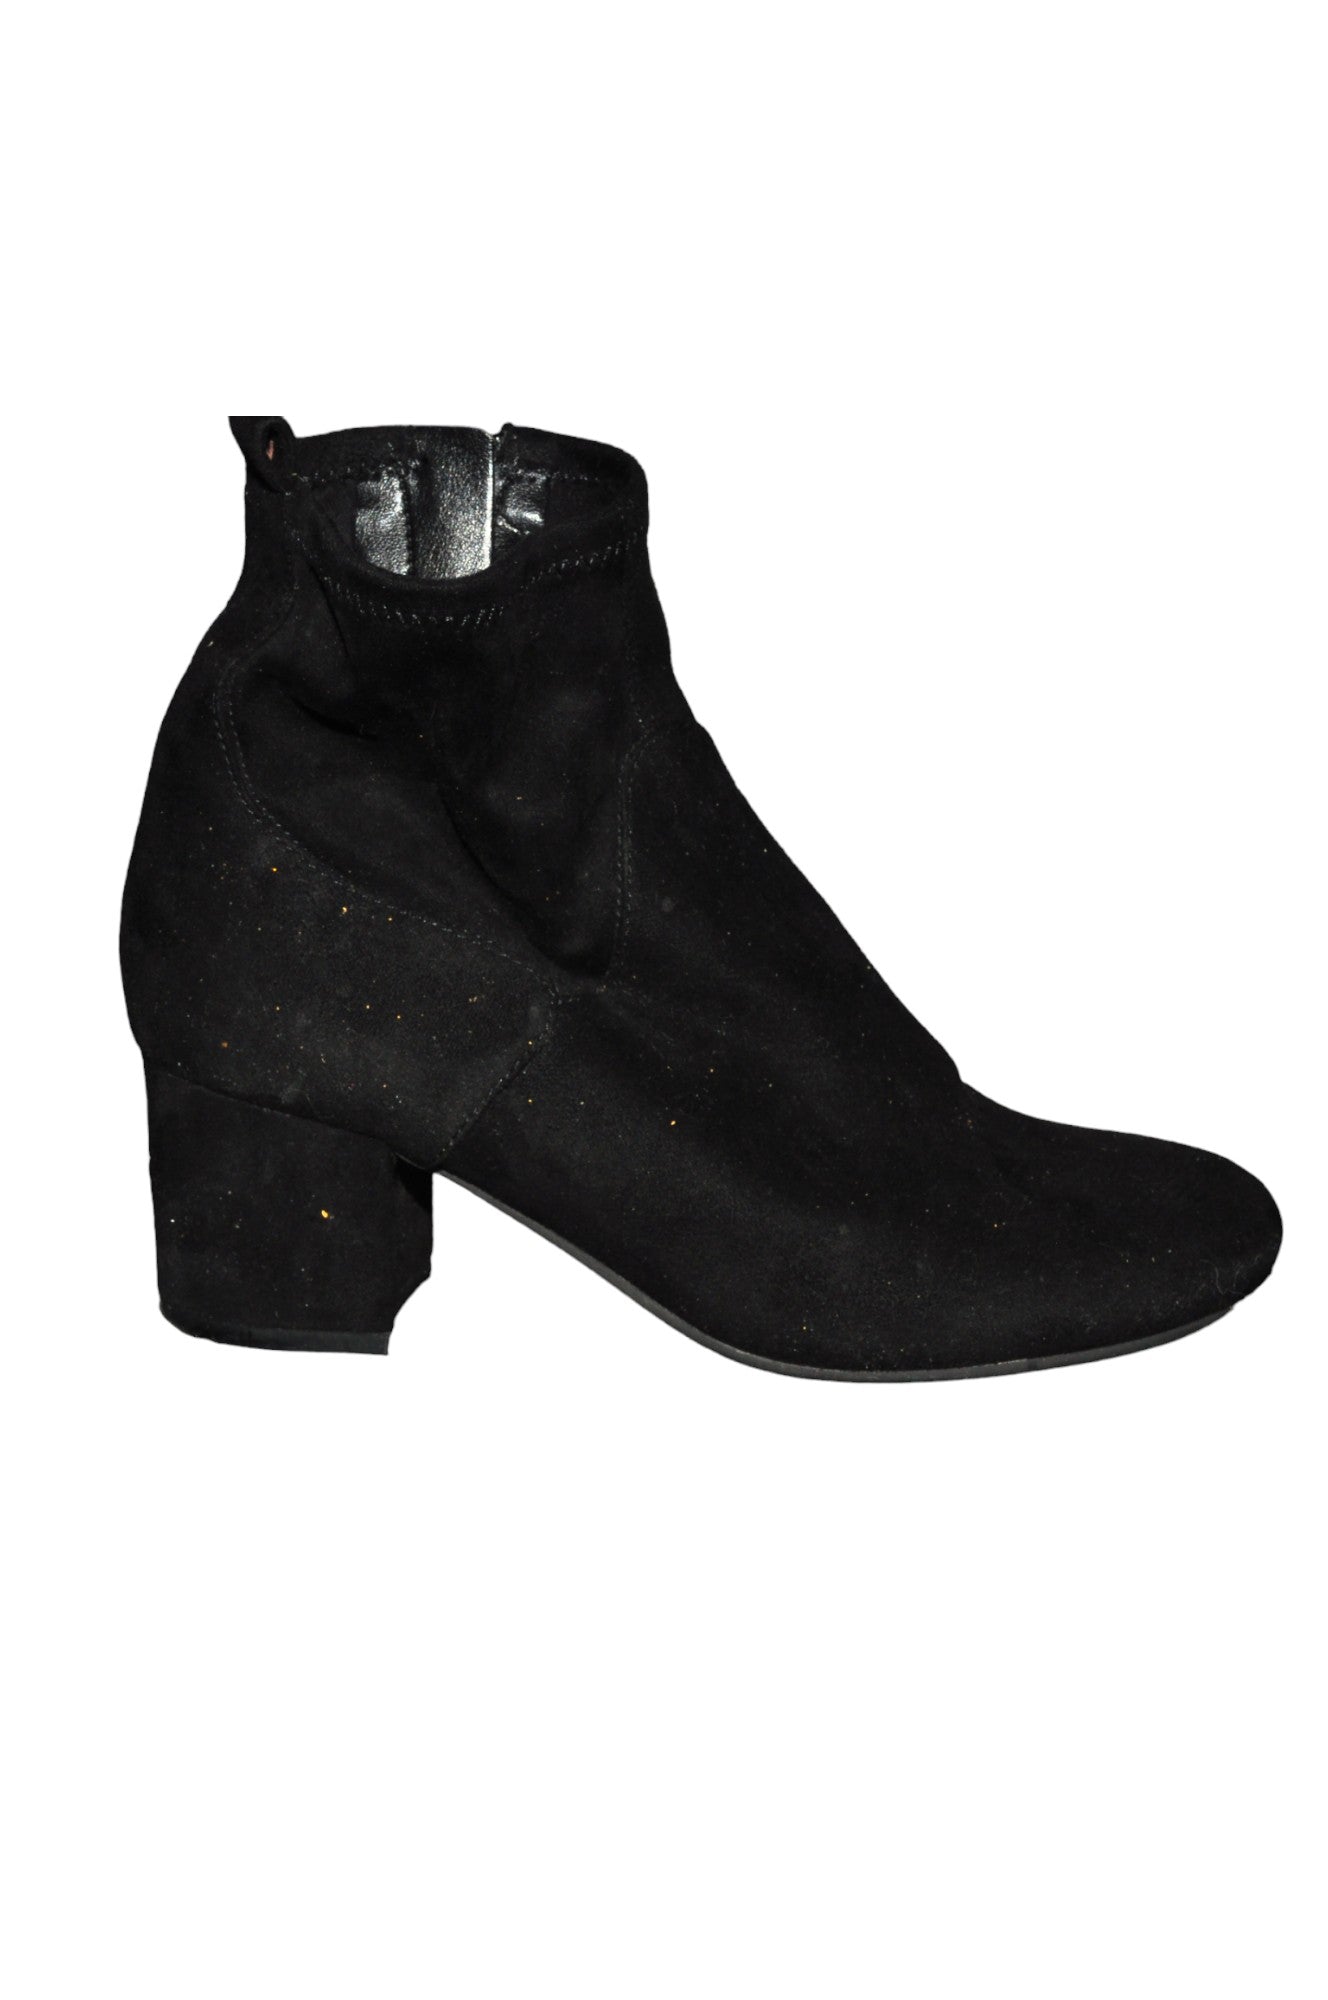 NEW LOOK Women Boots Regular fit in Black - Size 37 | 8.8 $ KOOP